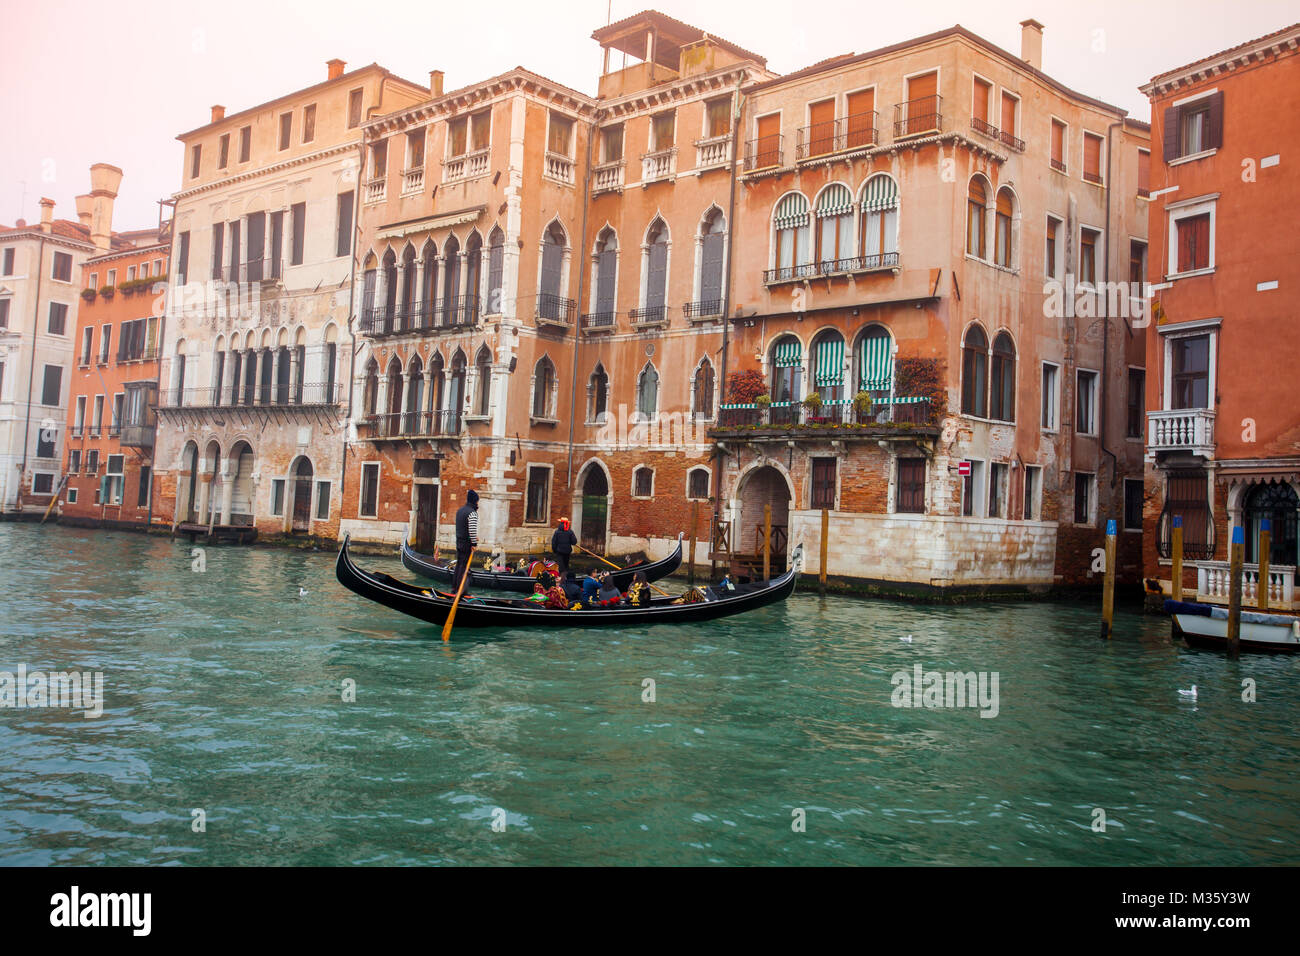 Venedig Canal Grande im Morgennebel Lagunenstadt Italien Reisen Europa Welt Erbe Stockfoto